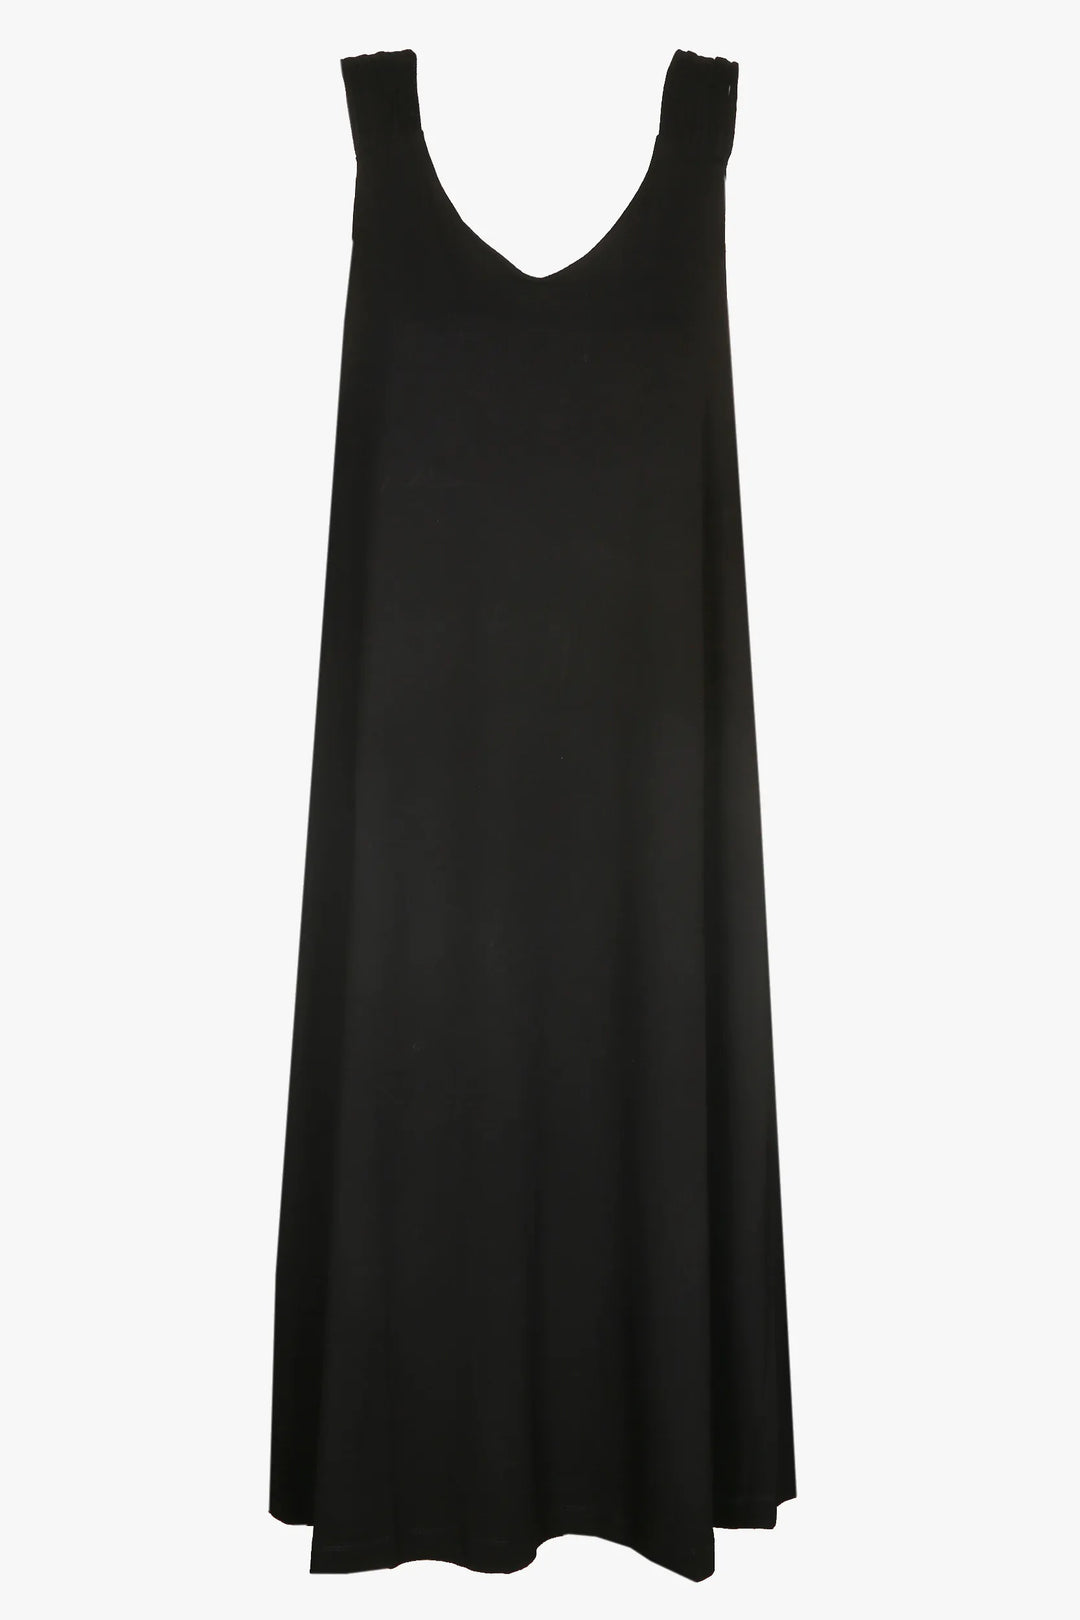 lange zwarte jurk - xandres - - grote maten - dameskleding - kledingwinkel - herent - leuven